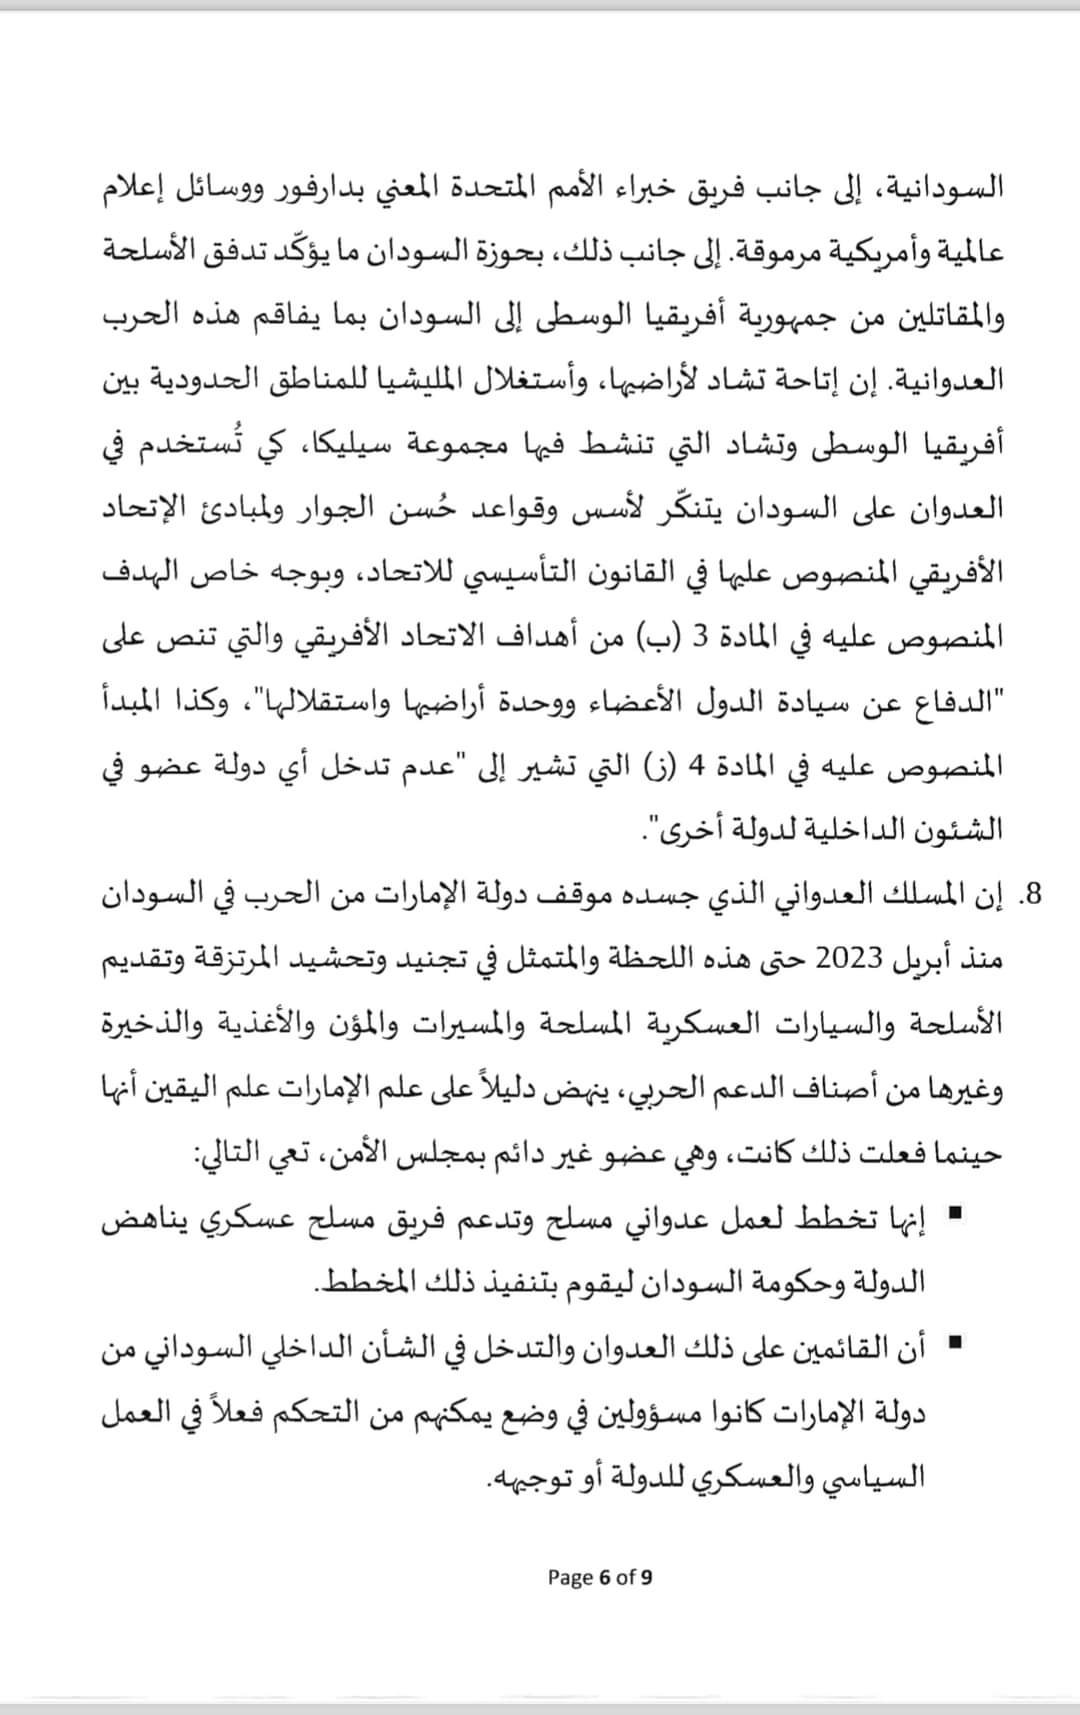 السودان يقدم شكوى رسمية ضد الإمارات لمجلس الأمن الدول..النص الكامل والصورة